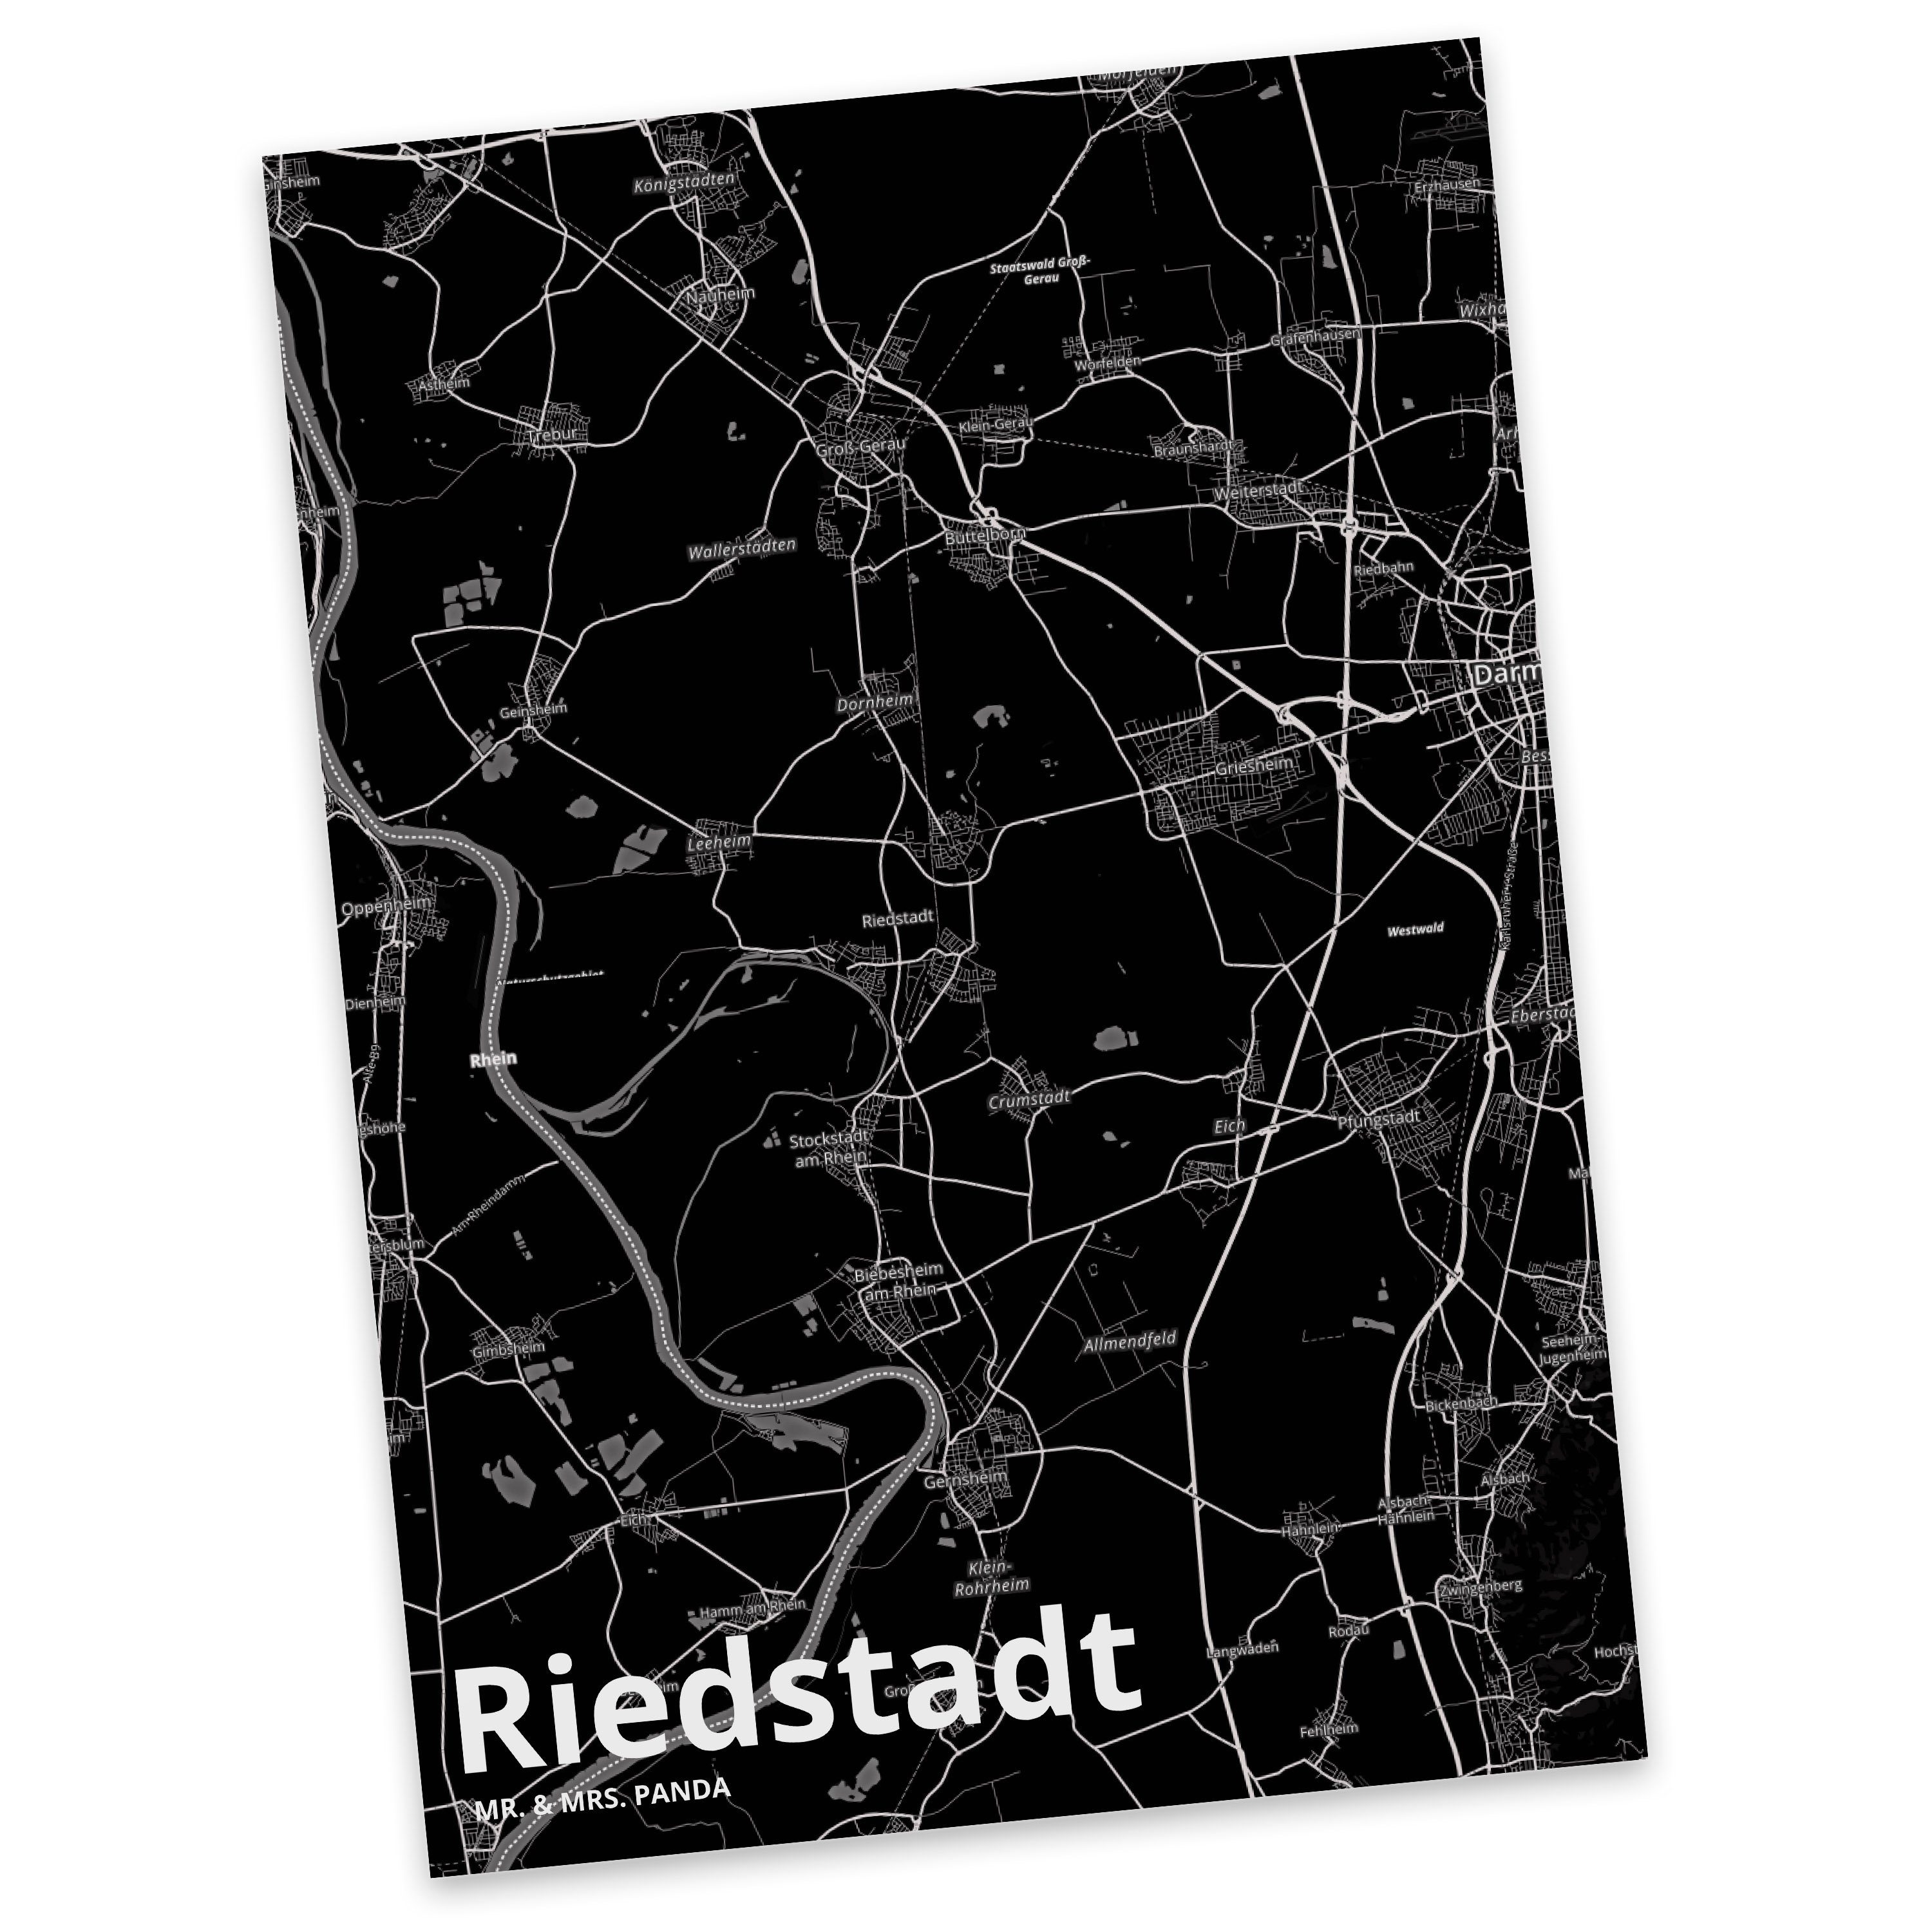 Mr. & Mrs. Panda Postkarte Riedstadt - Geschenk, Grußkarte, Ort, Städte, Geburtstagskarte, Einla